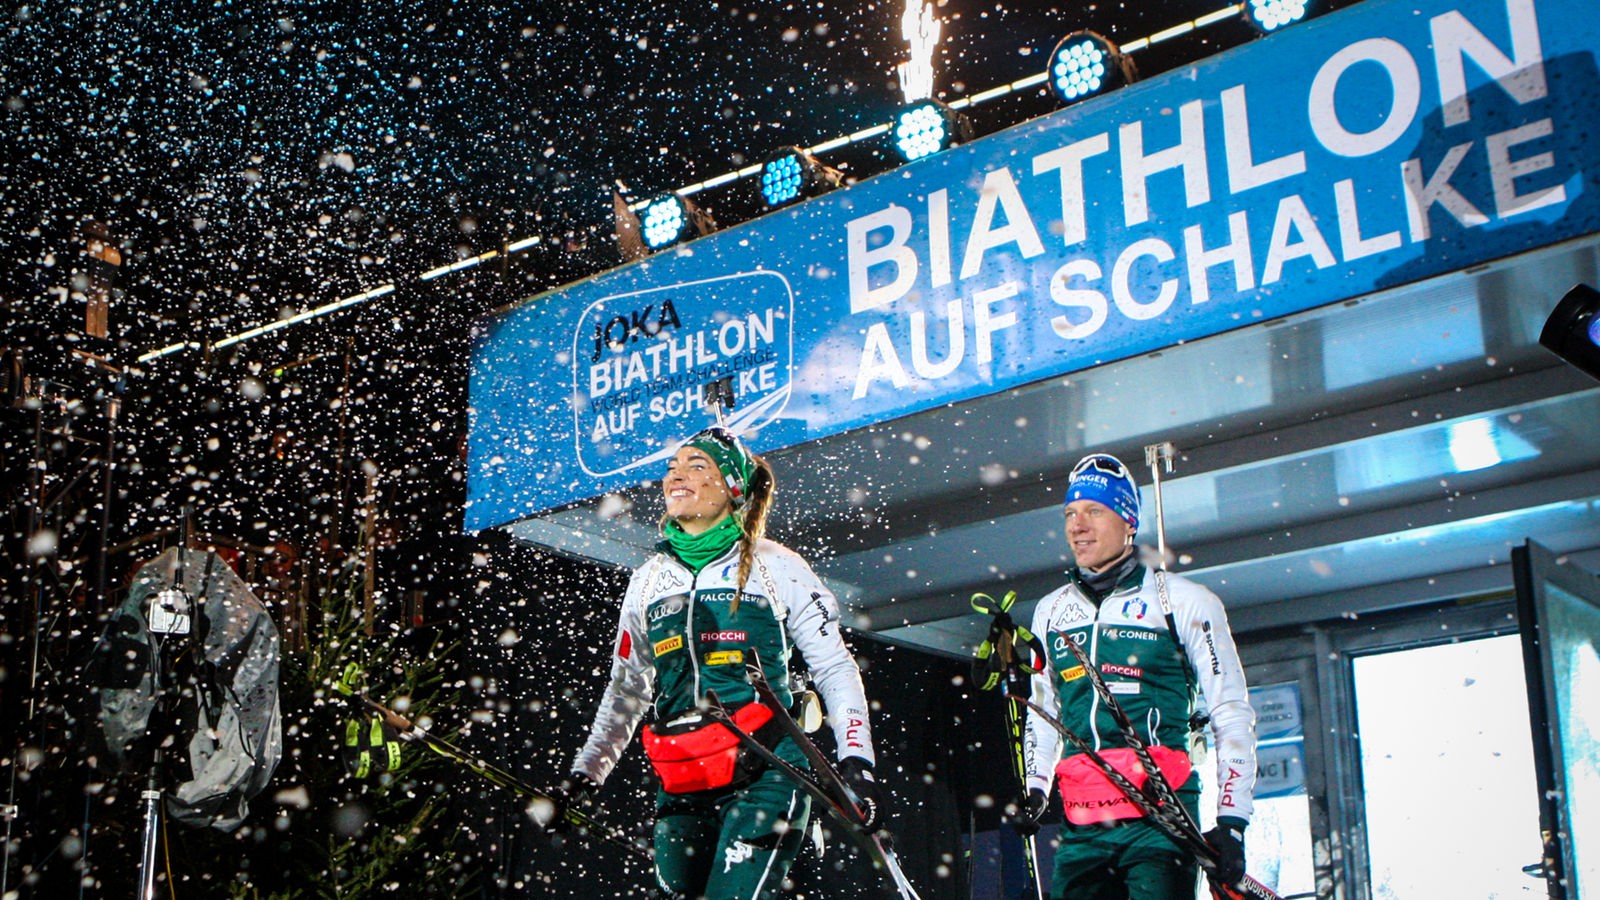 Biathlon Auf Schalke se fixe des objectifs durables – Ruhr – news